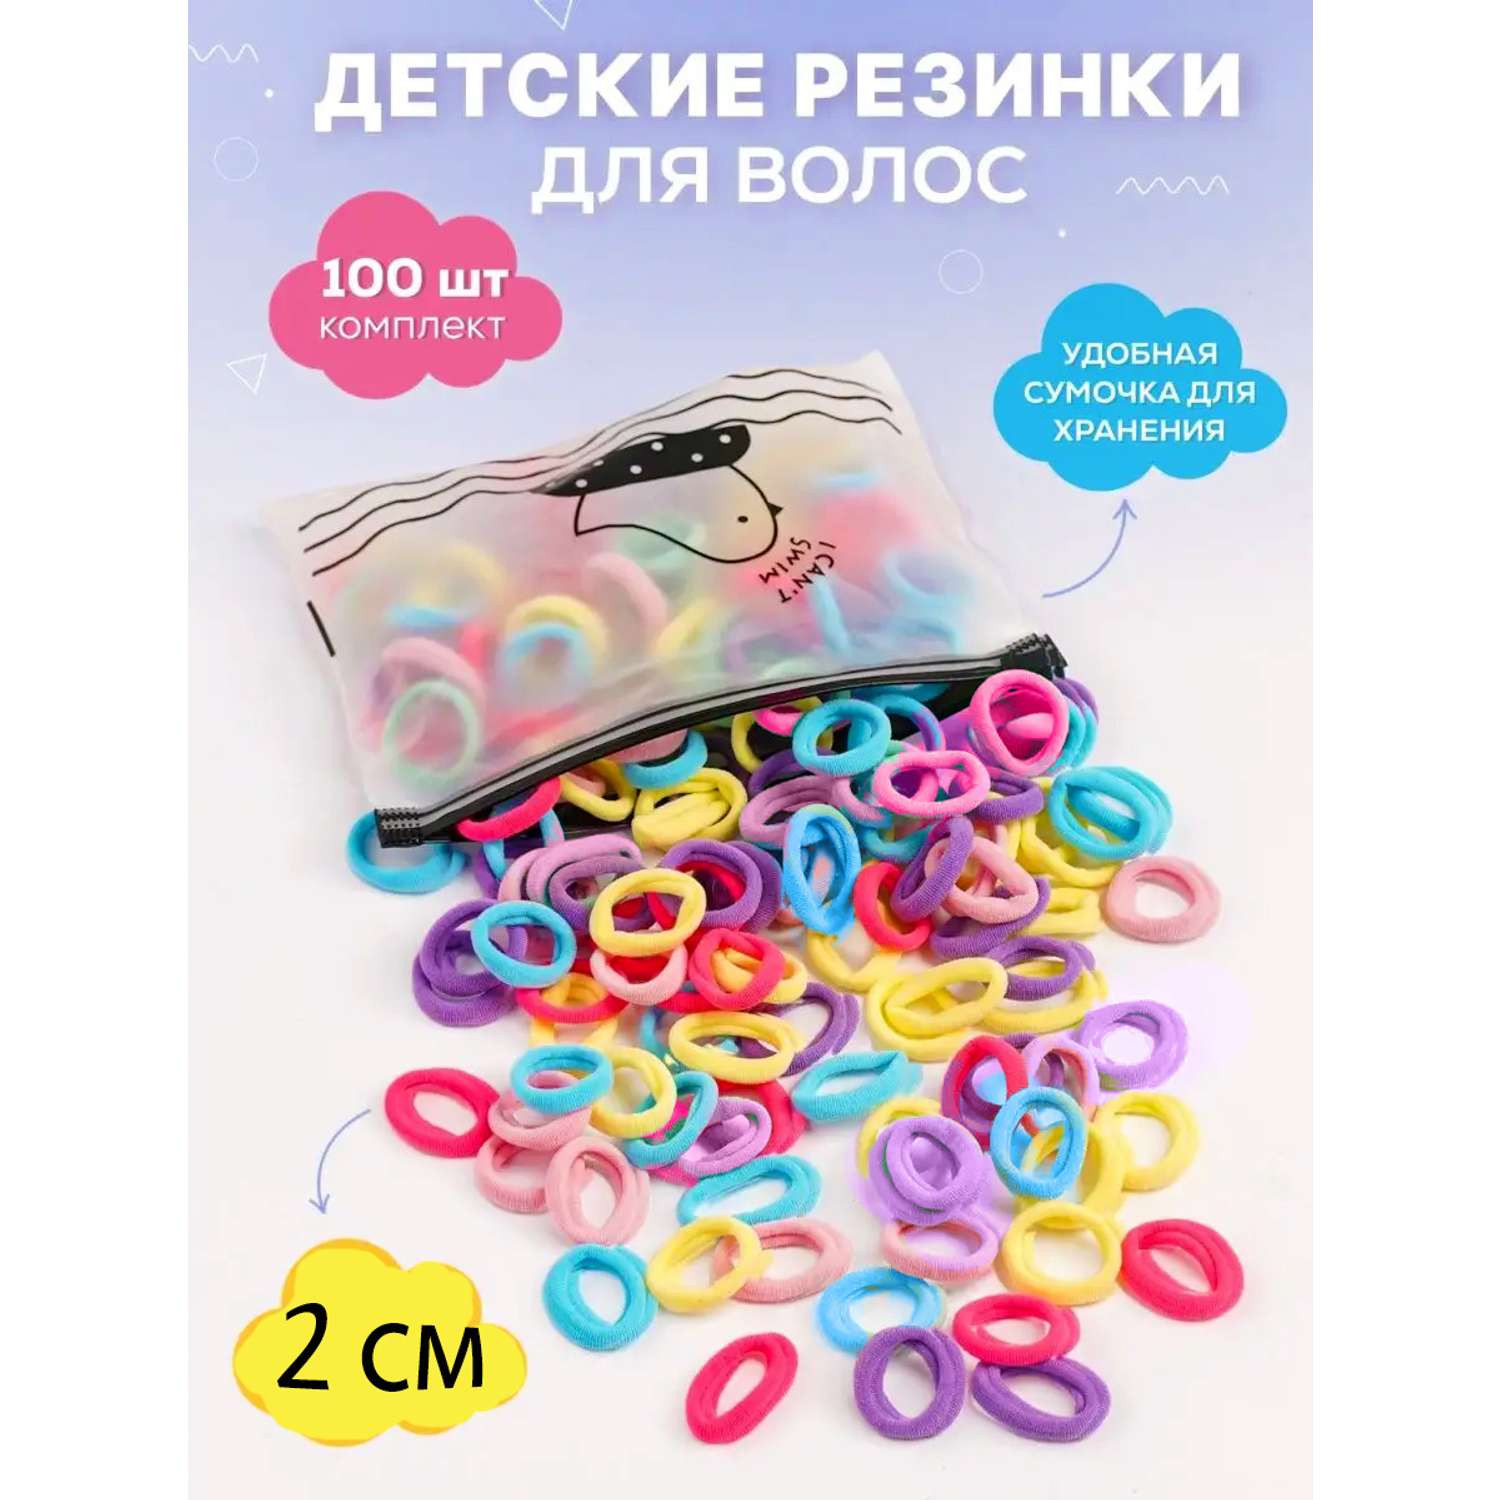 Резинки для волос в косметичке 1000bantov 100 штук - фото 1